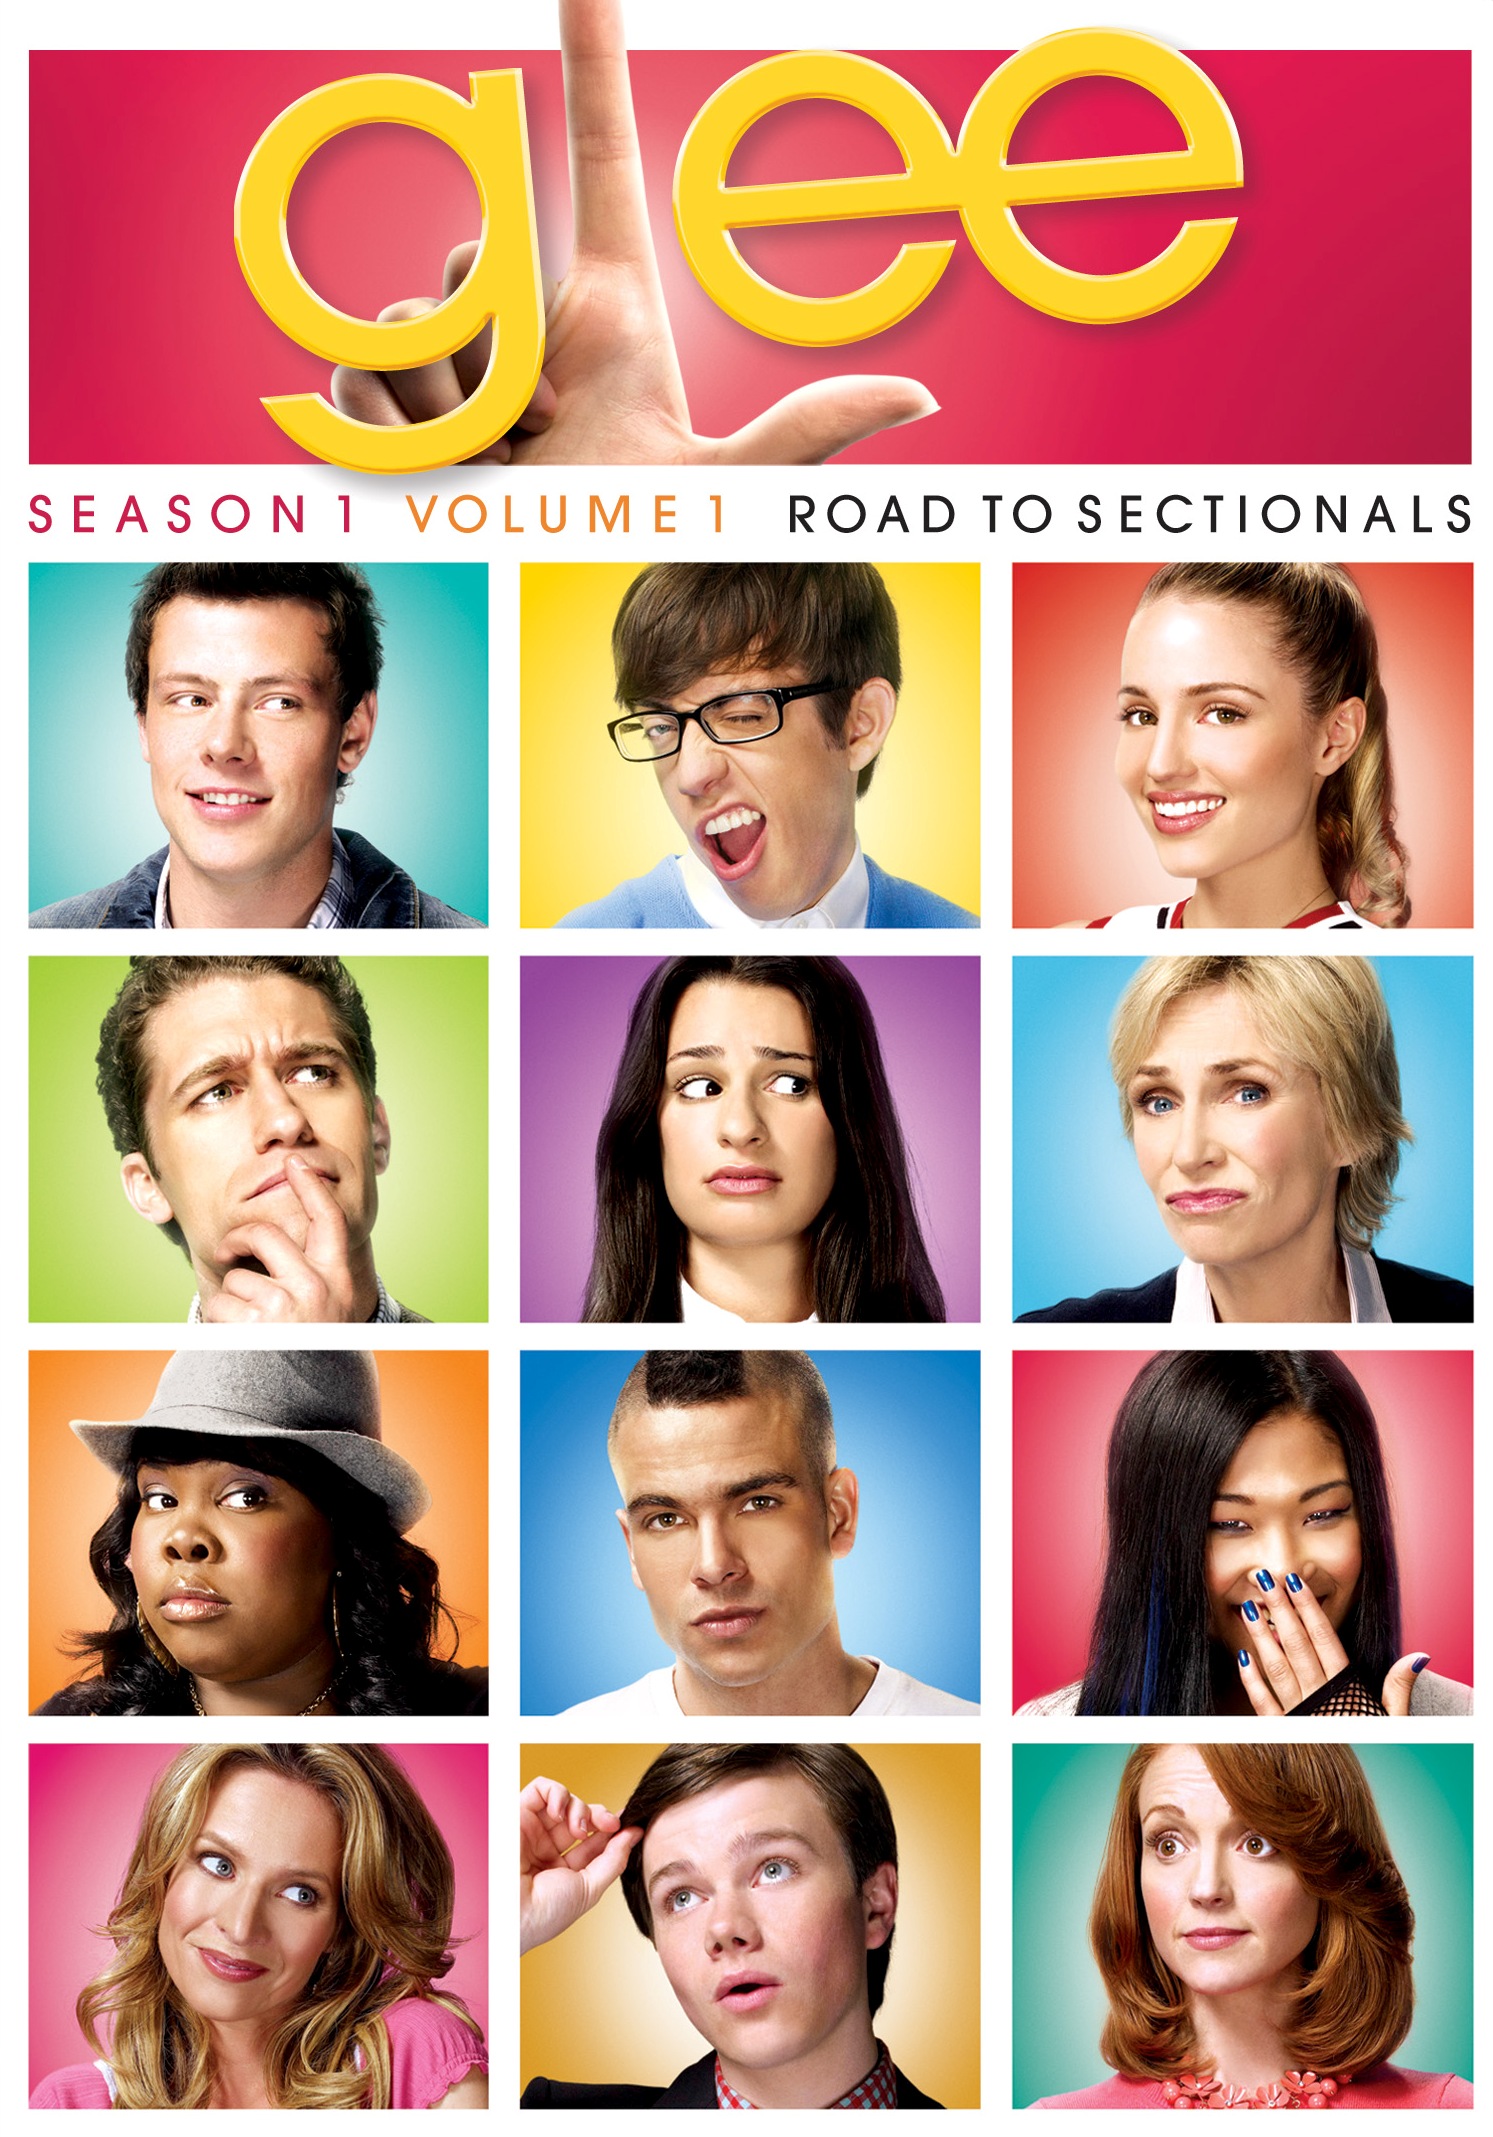 Best Buy Glee Season 1 Vol 1 Road To Sectionals 4 Discs Dvd